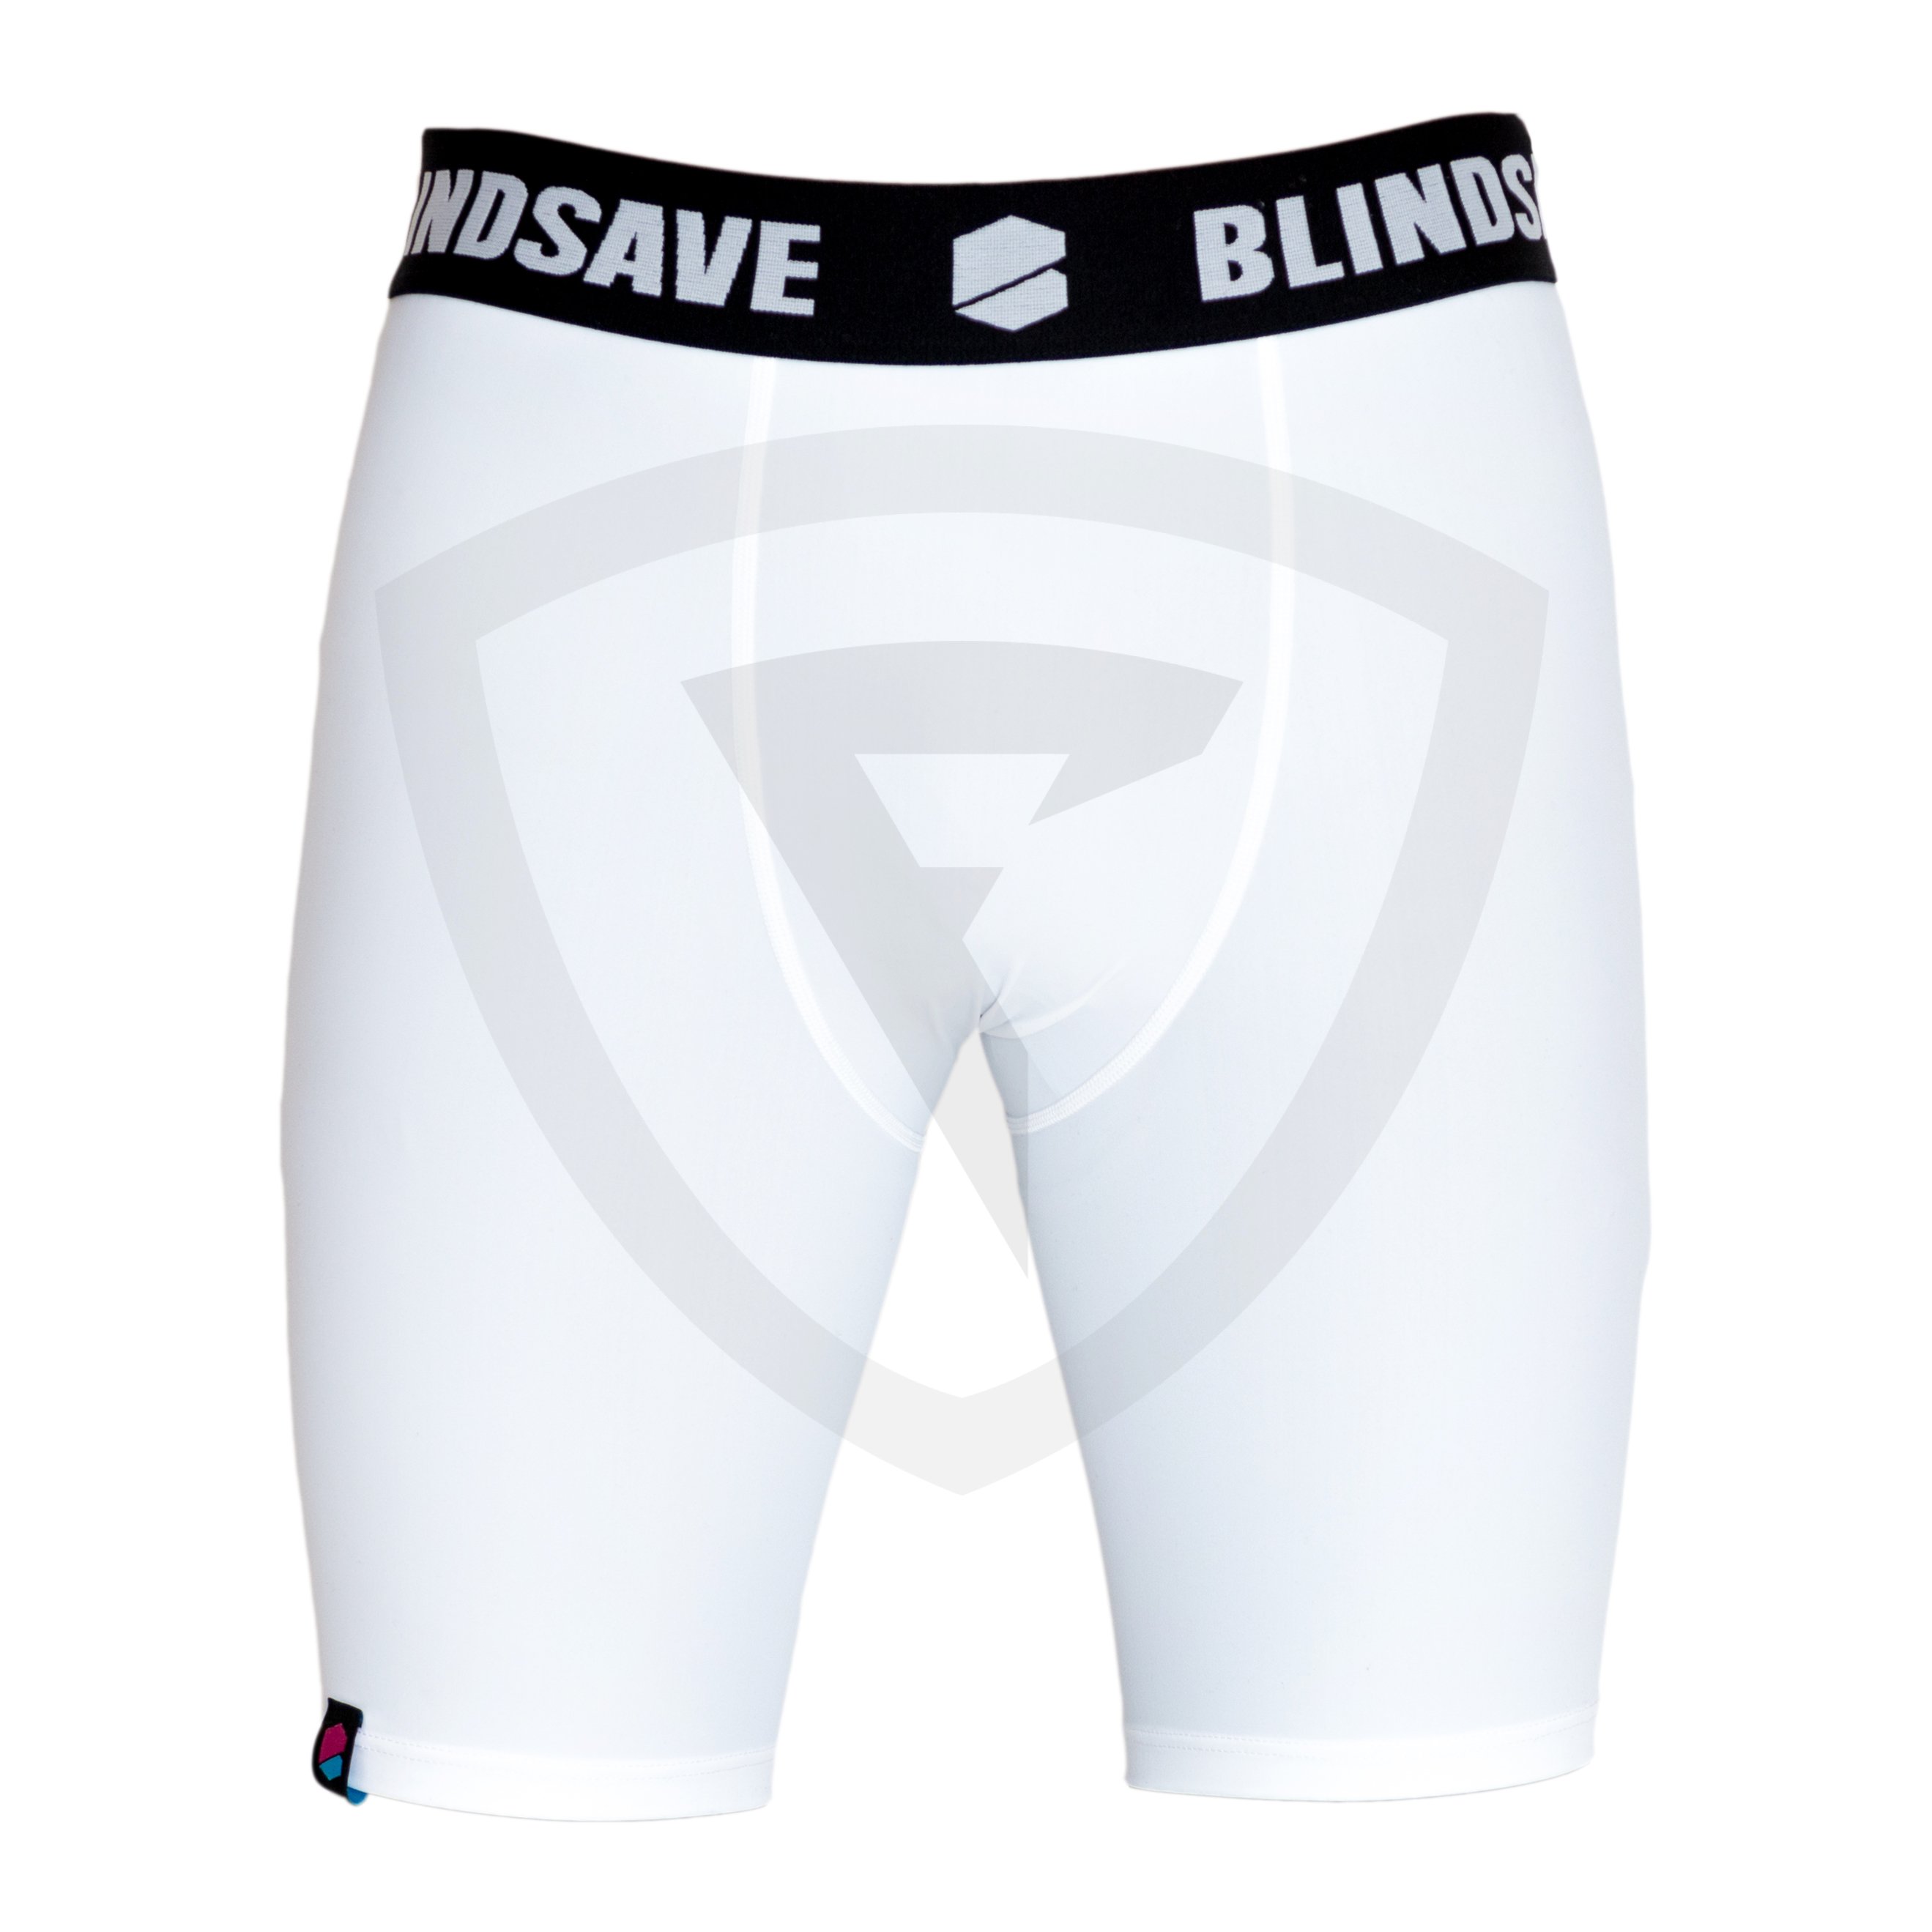 Blindsave Compression Shorts XXL černá